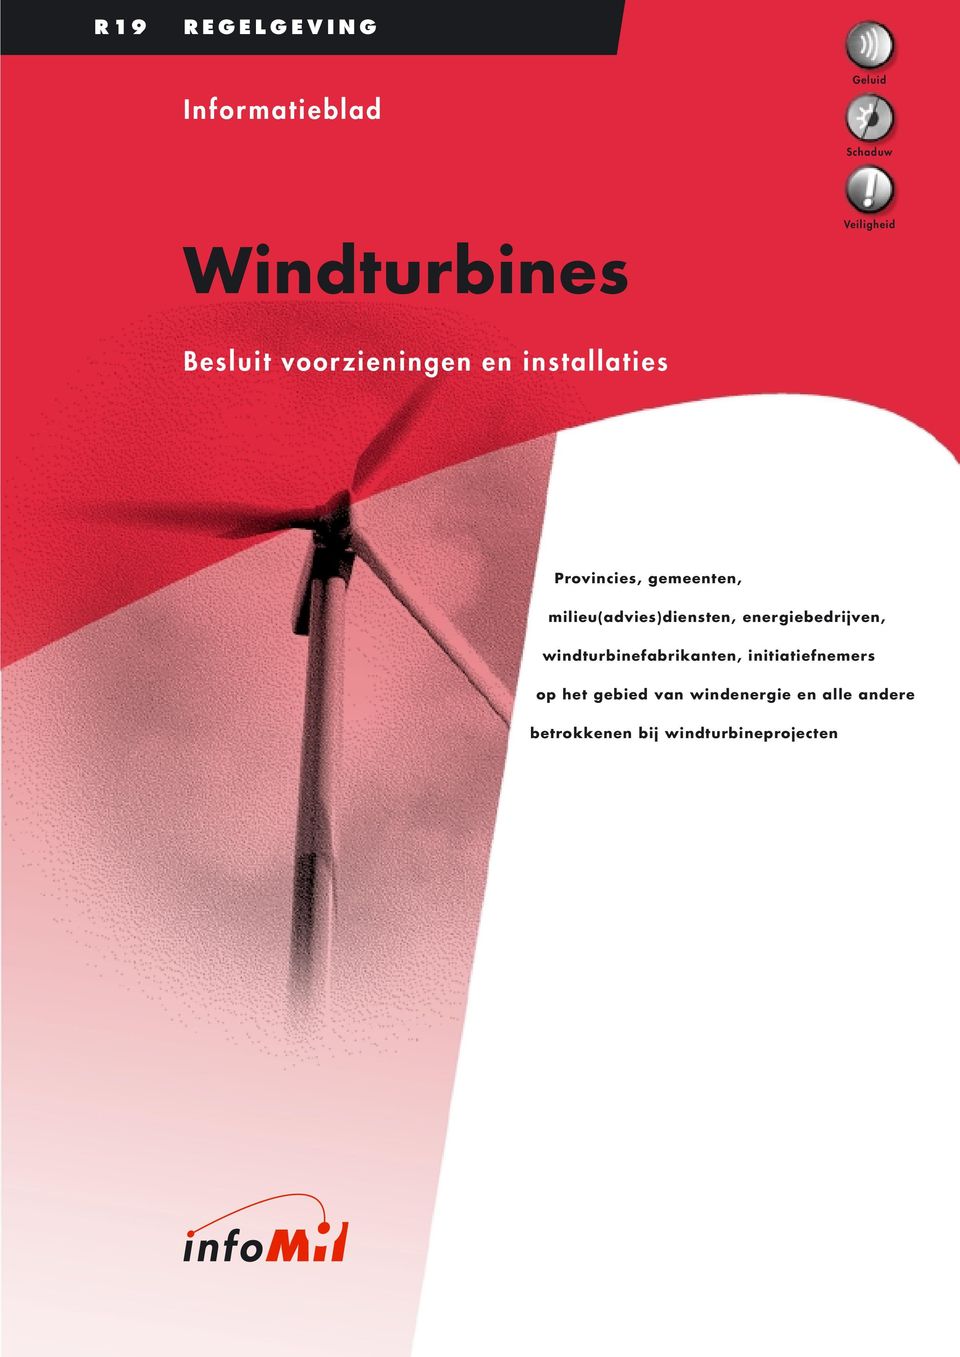 milieu(advies)diensten, energiebedrijven, windturbinefabrikanten,